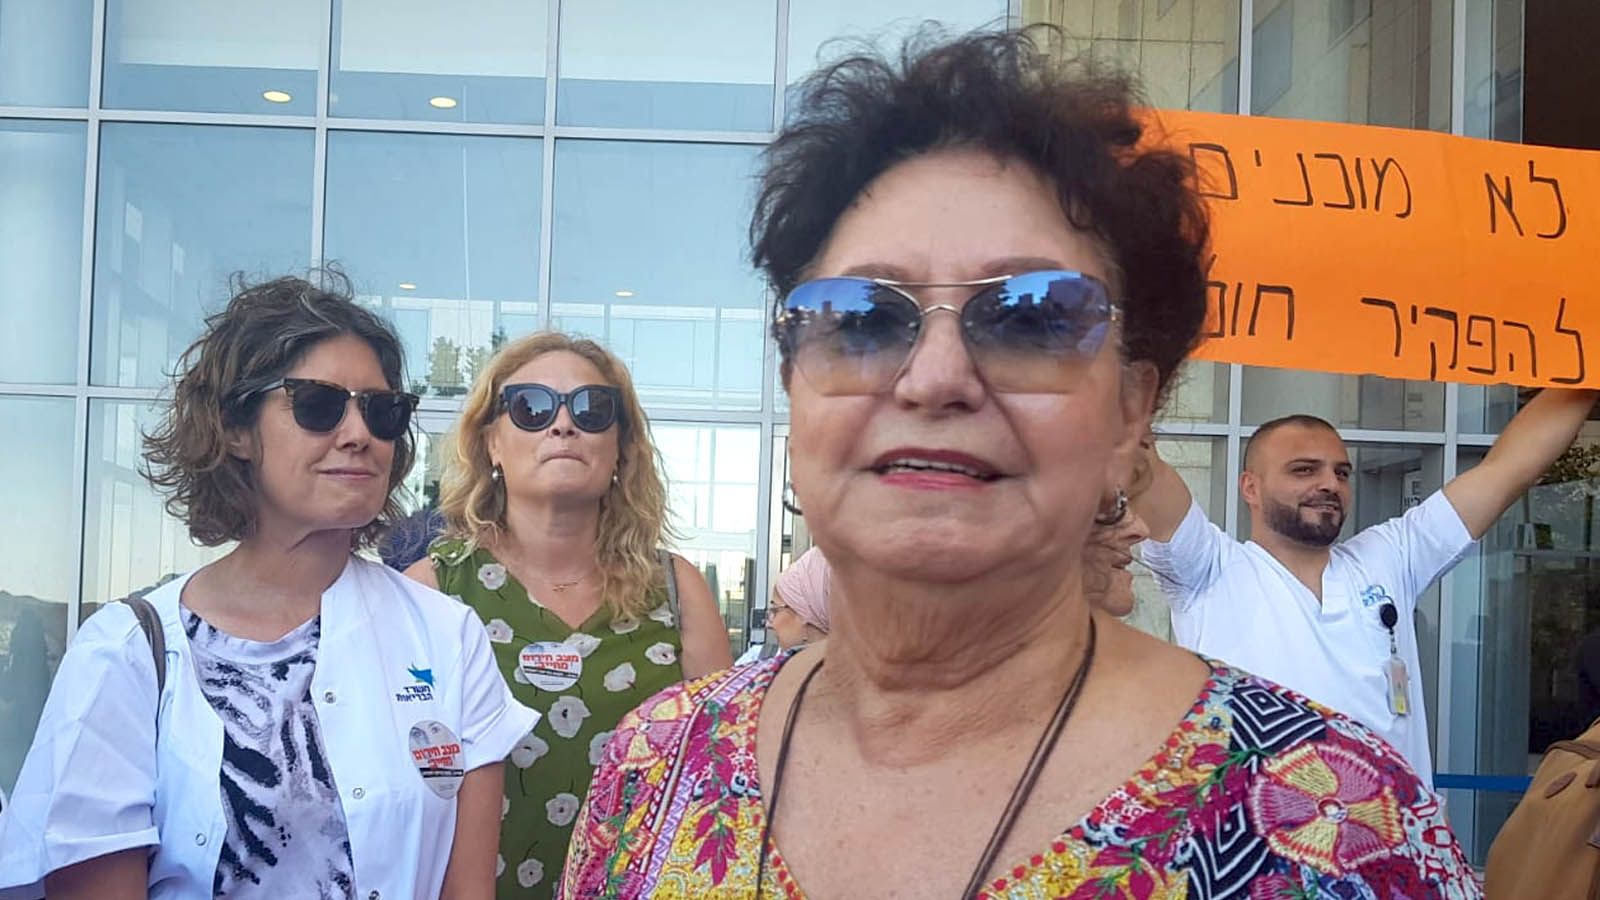 إيلانا كوهين في مظاهرة للممرضات أمام وزارة الصحة في القدس، 22 يوليو 2019  (تل كارمون)